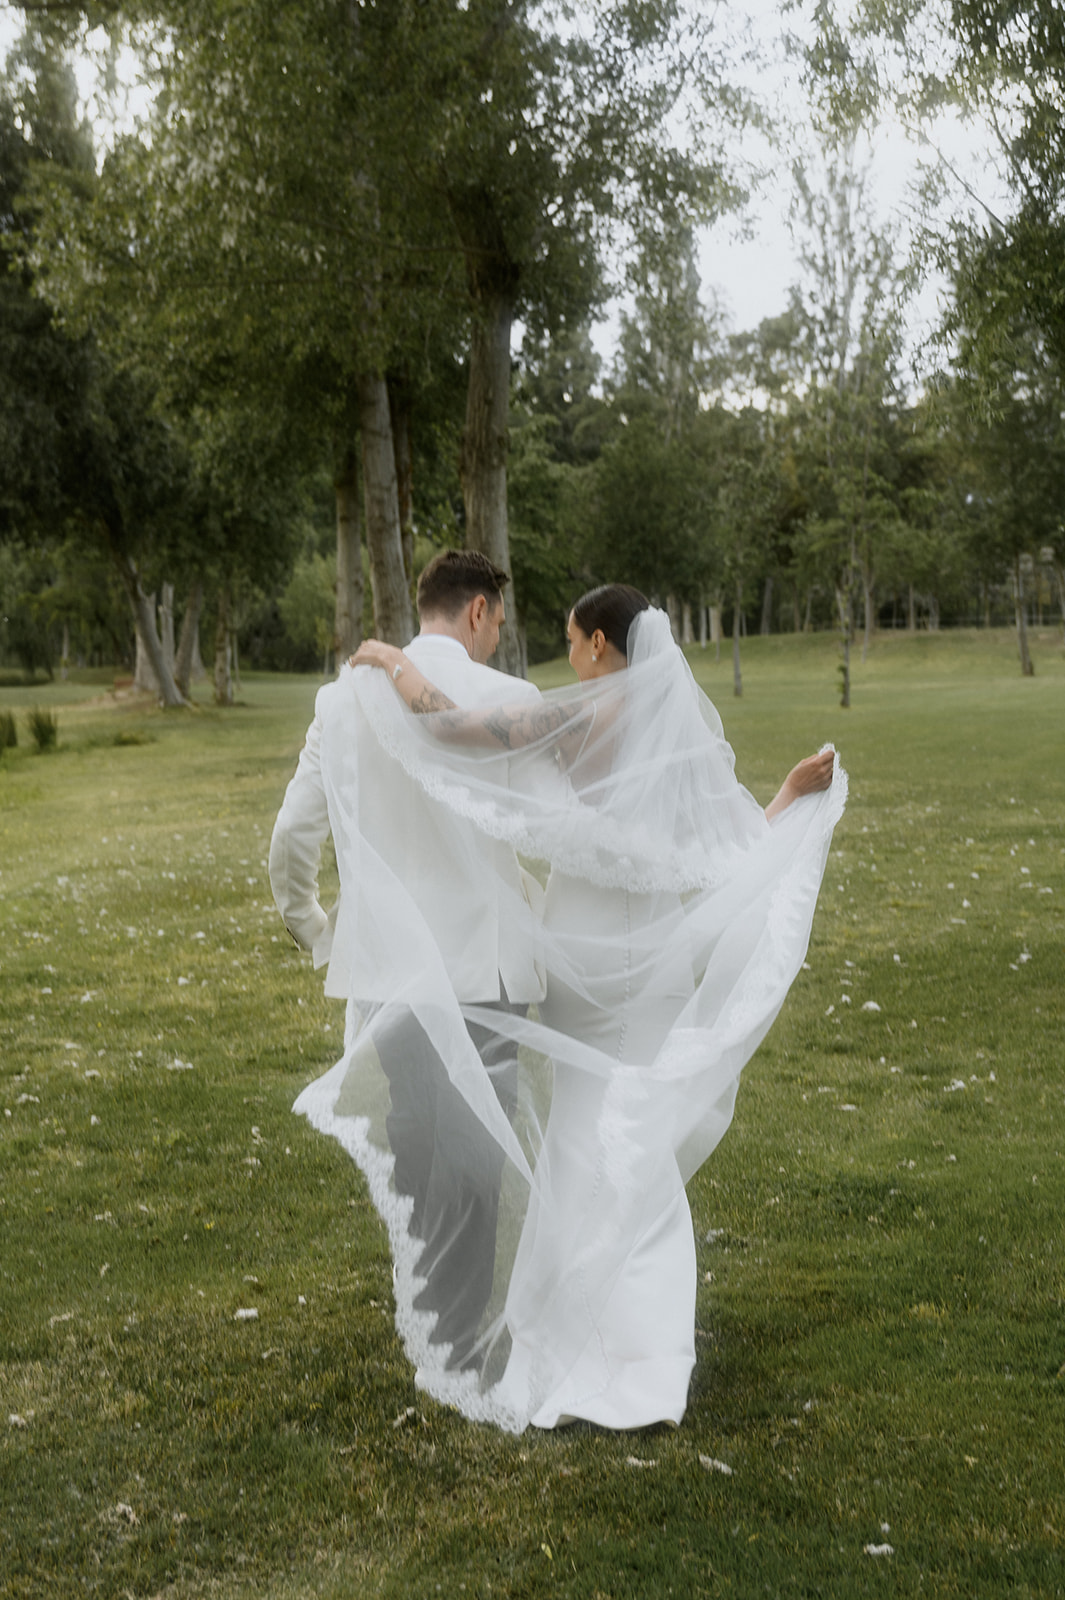 stylish wedding couple shoot ideas 